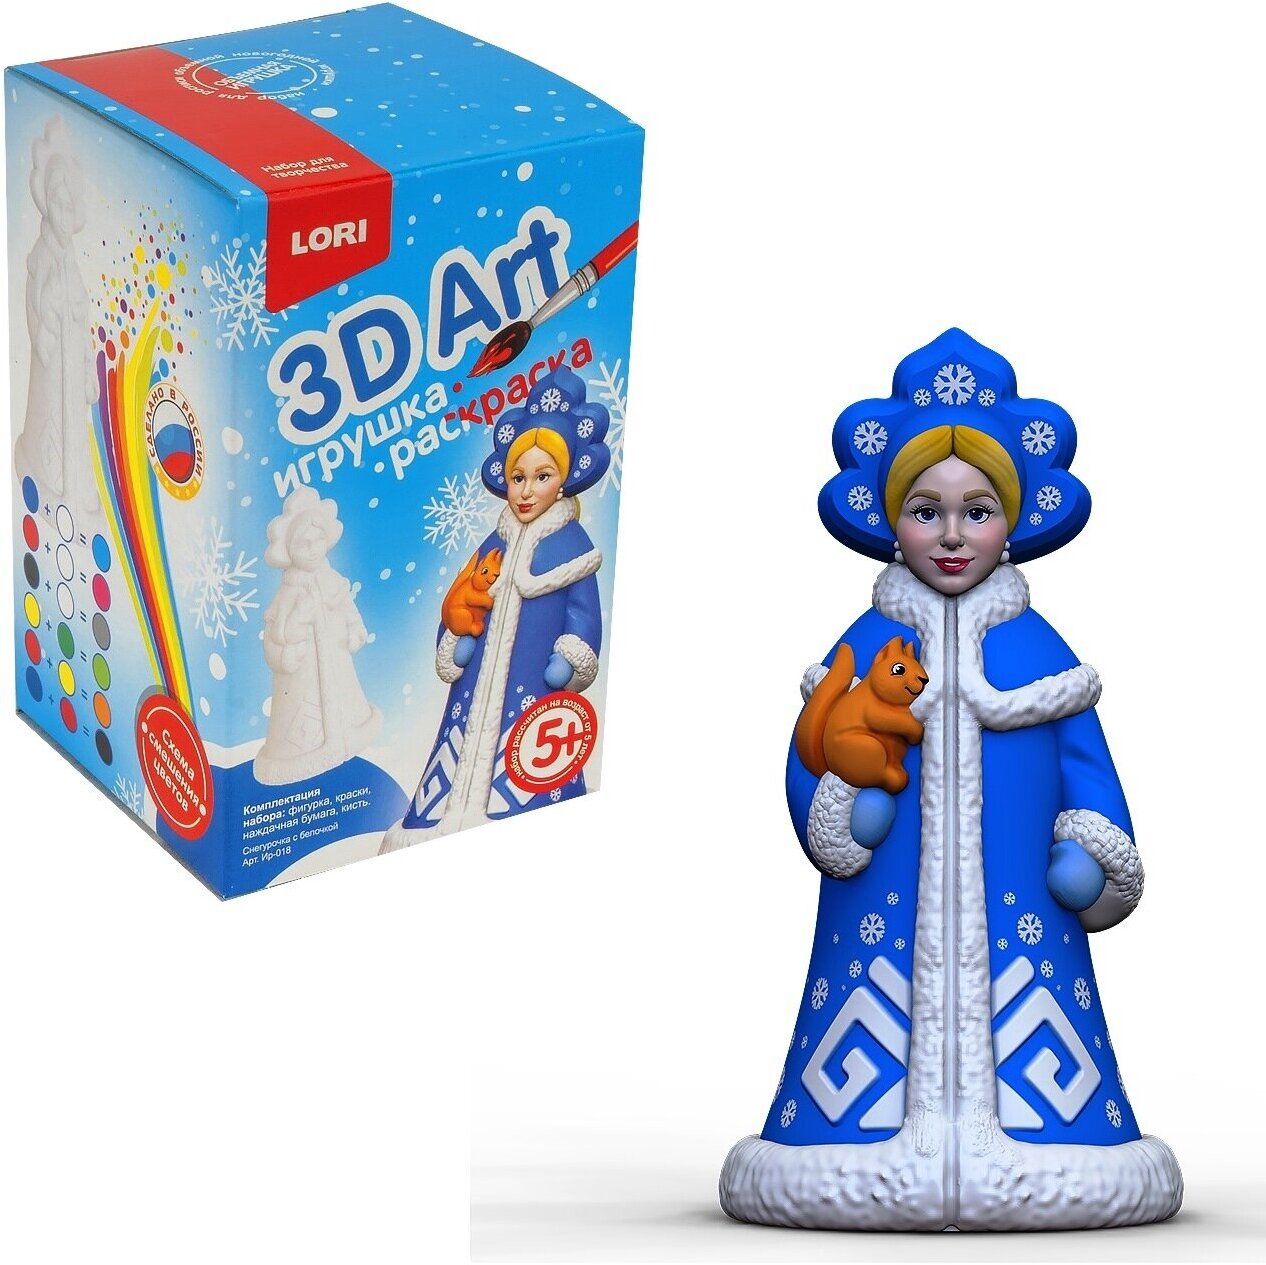 LORI 3DArt Игрушка-раскраска Снегурочка с белочкой (комплект материалов для изготовления, в коробке, от 5 лет) Ир018, (ООО "7-Я")